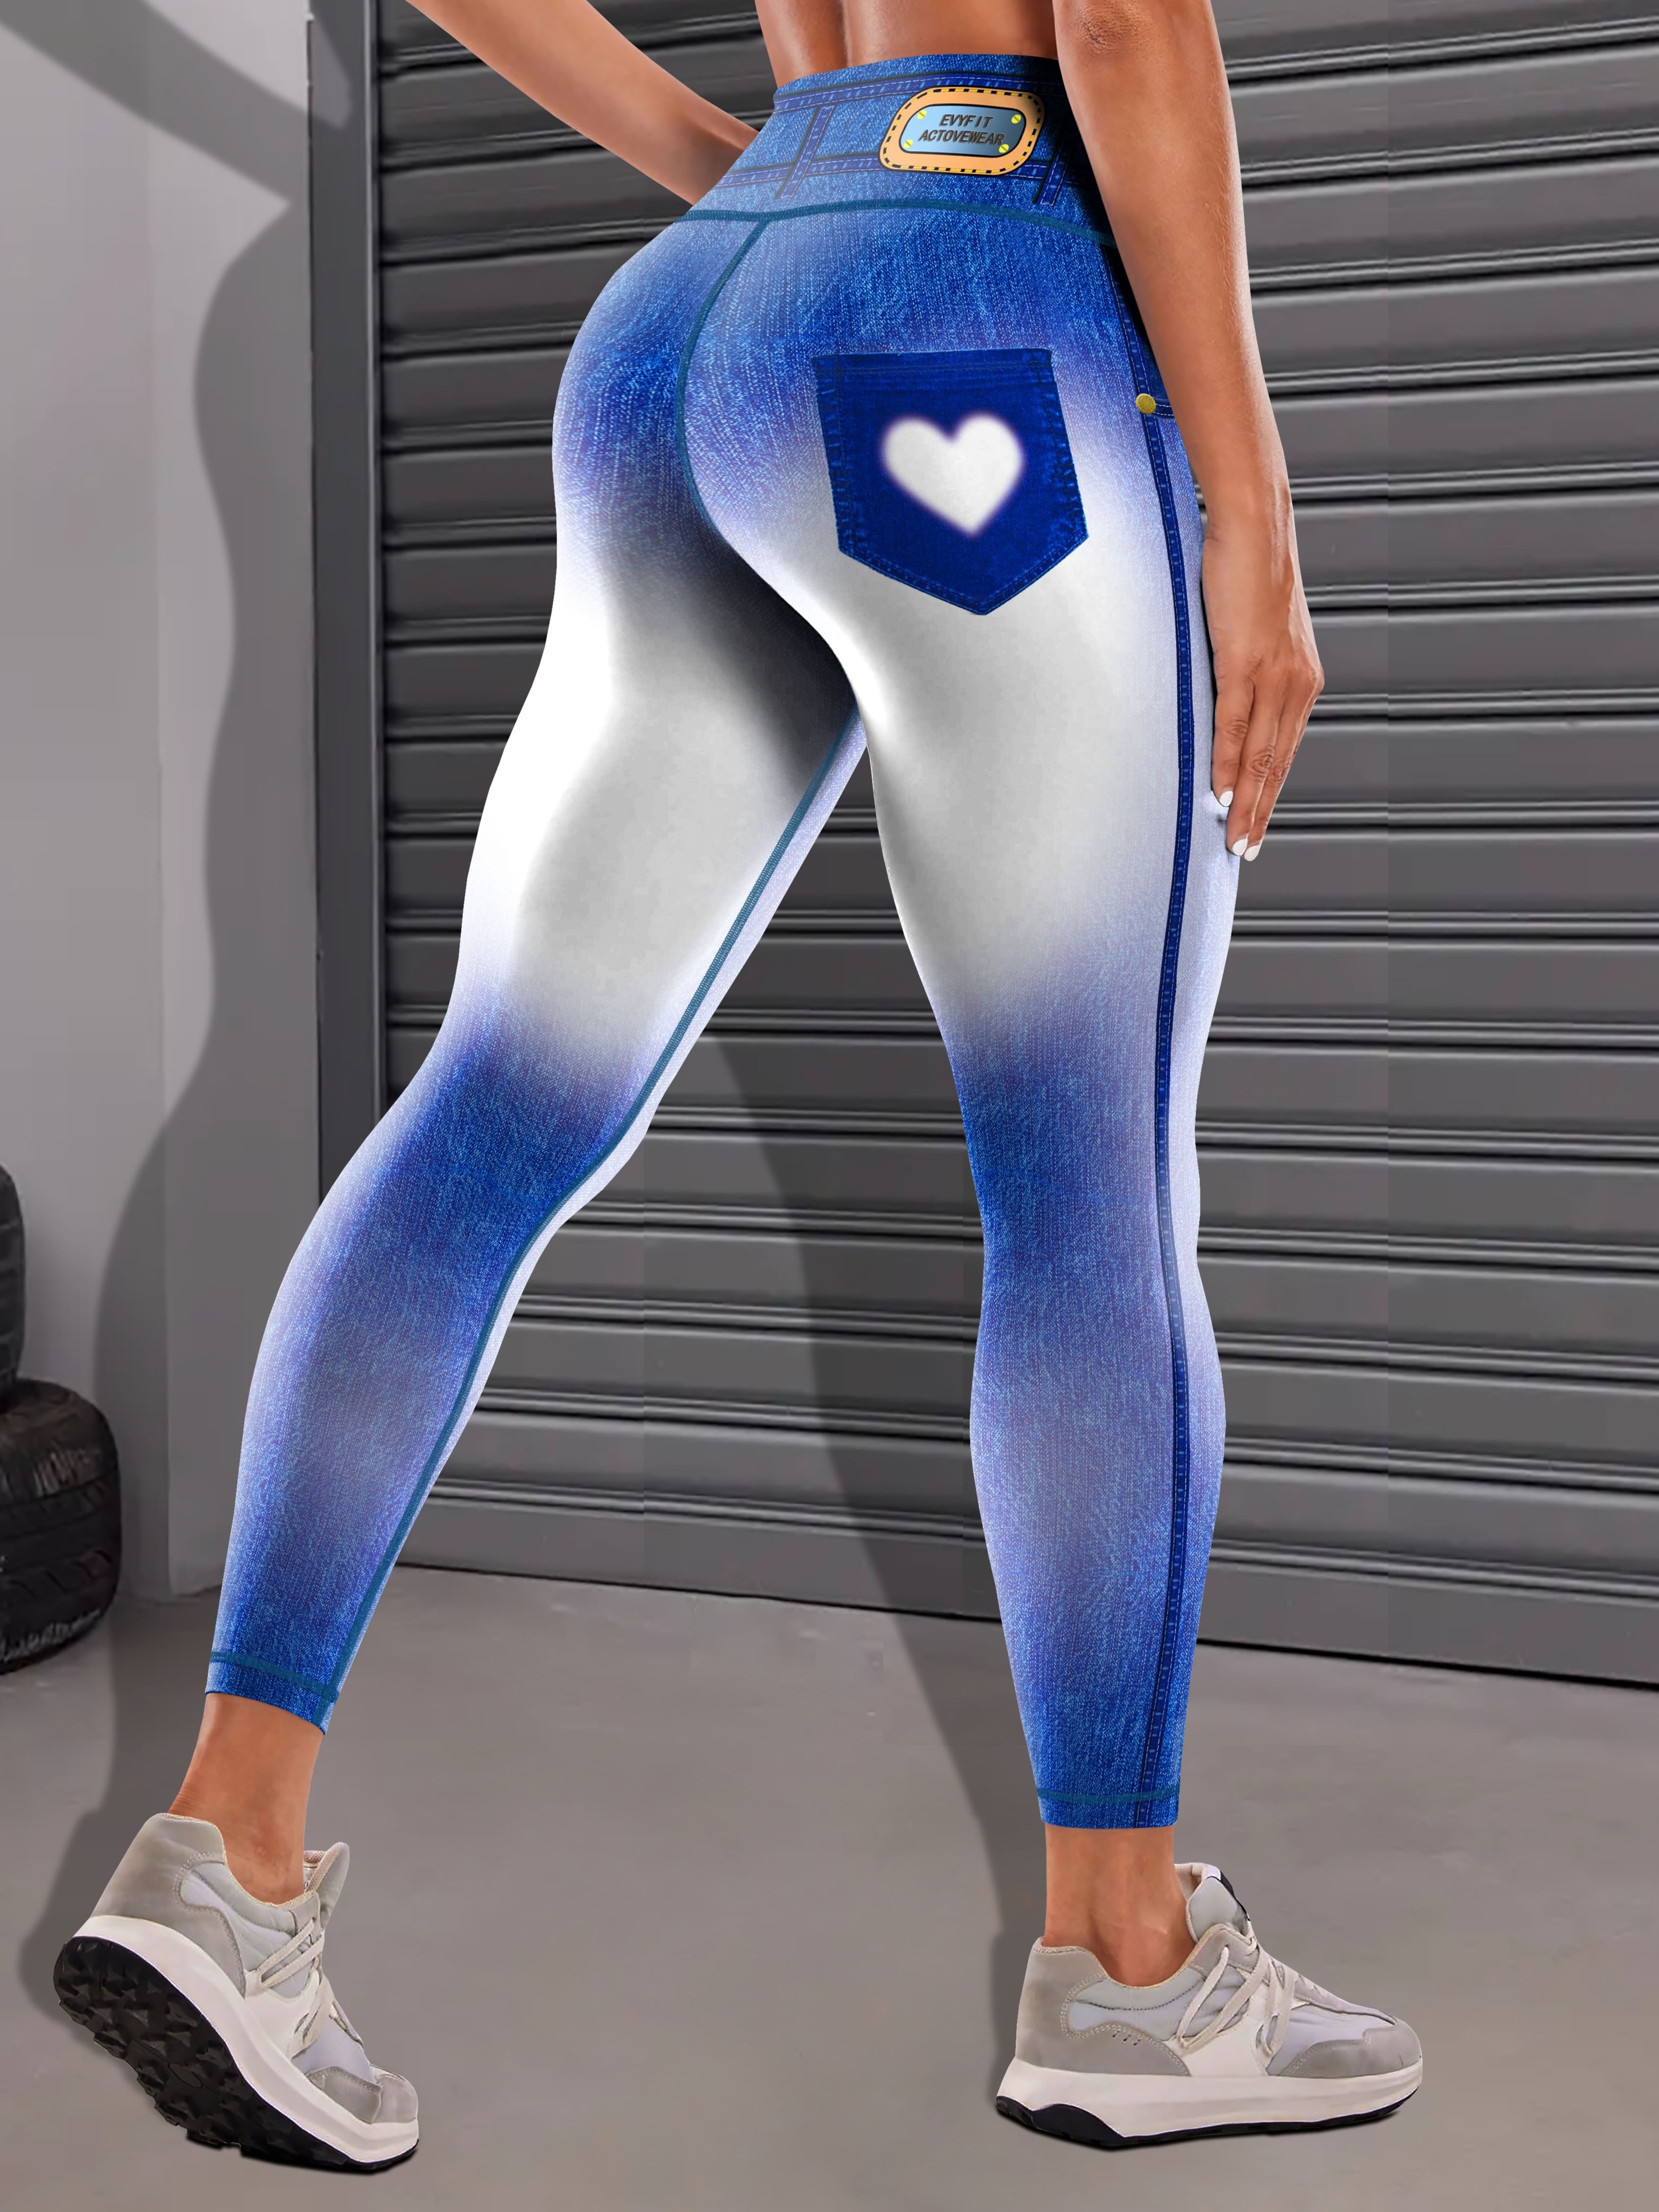 Innerwin Look Print Jeggings Butt Lifting Women Denim Printed Leggings  Sport Tummy Control Slim Fit Capri Fake Jeans Blue L 